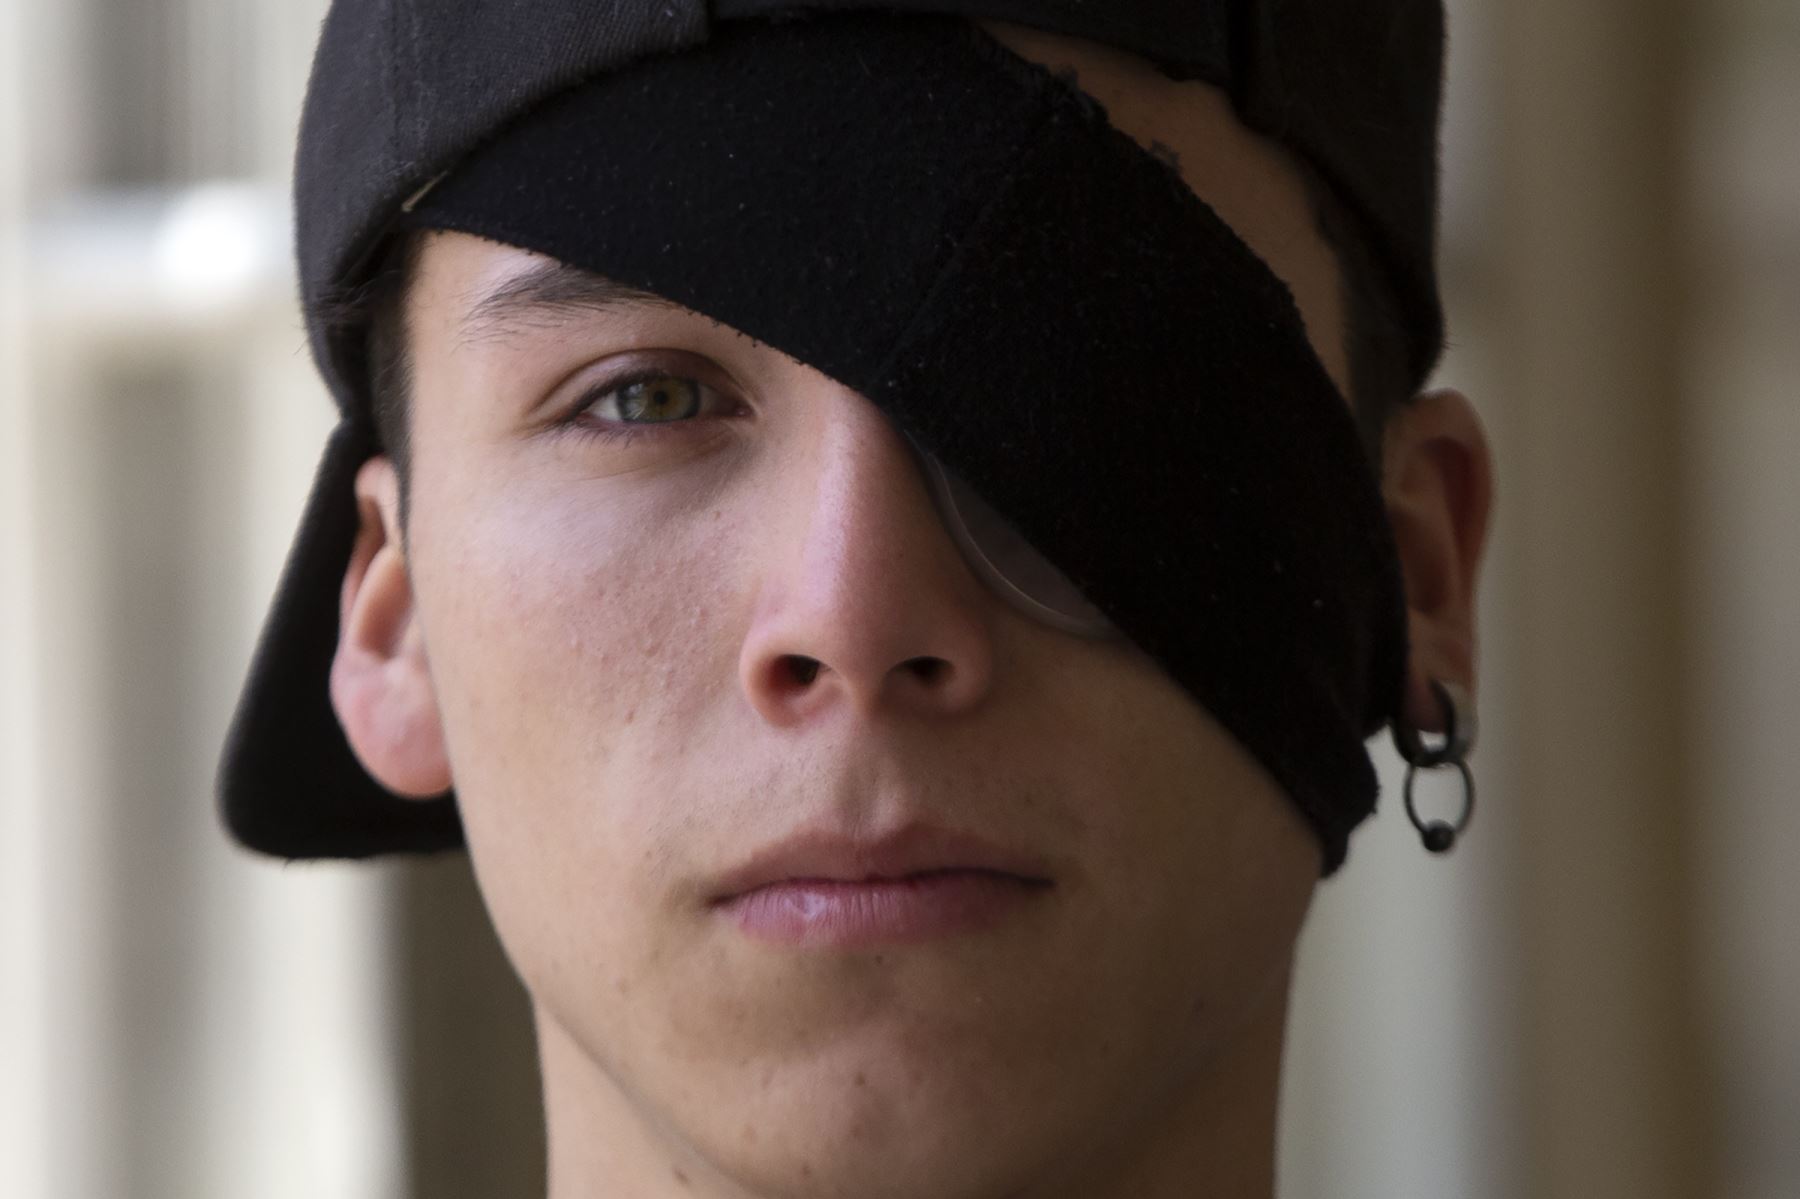 El estudiante chileno Carlos Vivanco, de 18 años, que resultó herido en el ojo debido a la violencia policial mientras protestaba, posa en un hospital de Santiago.
Foto: AFP